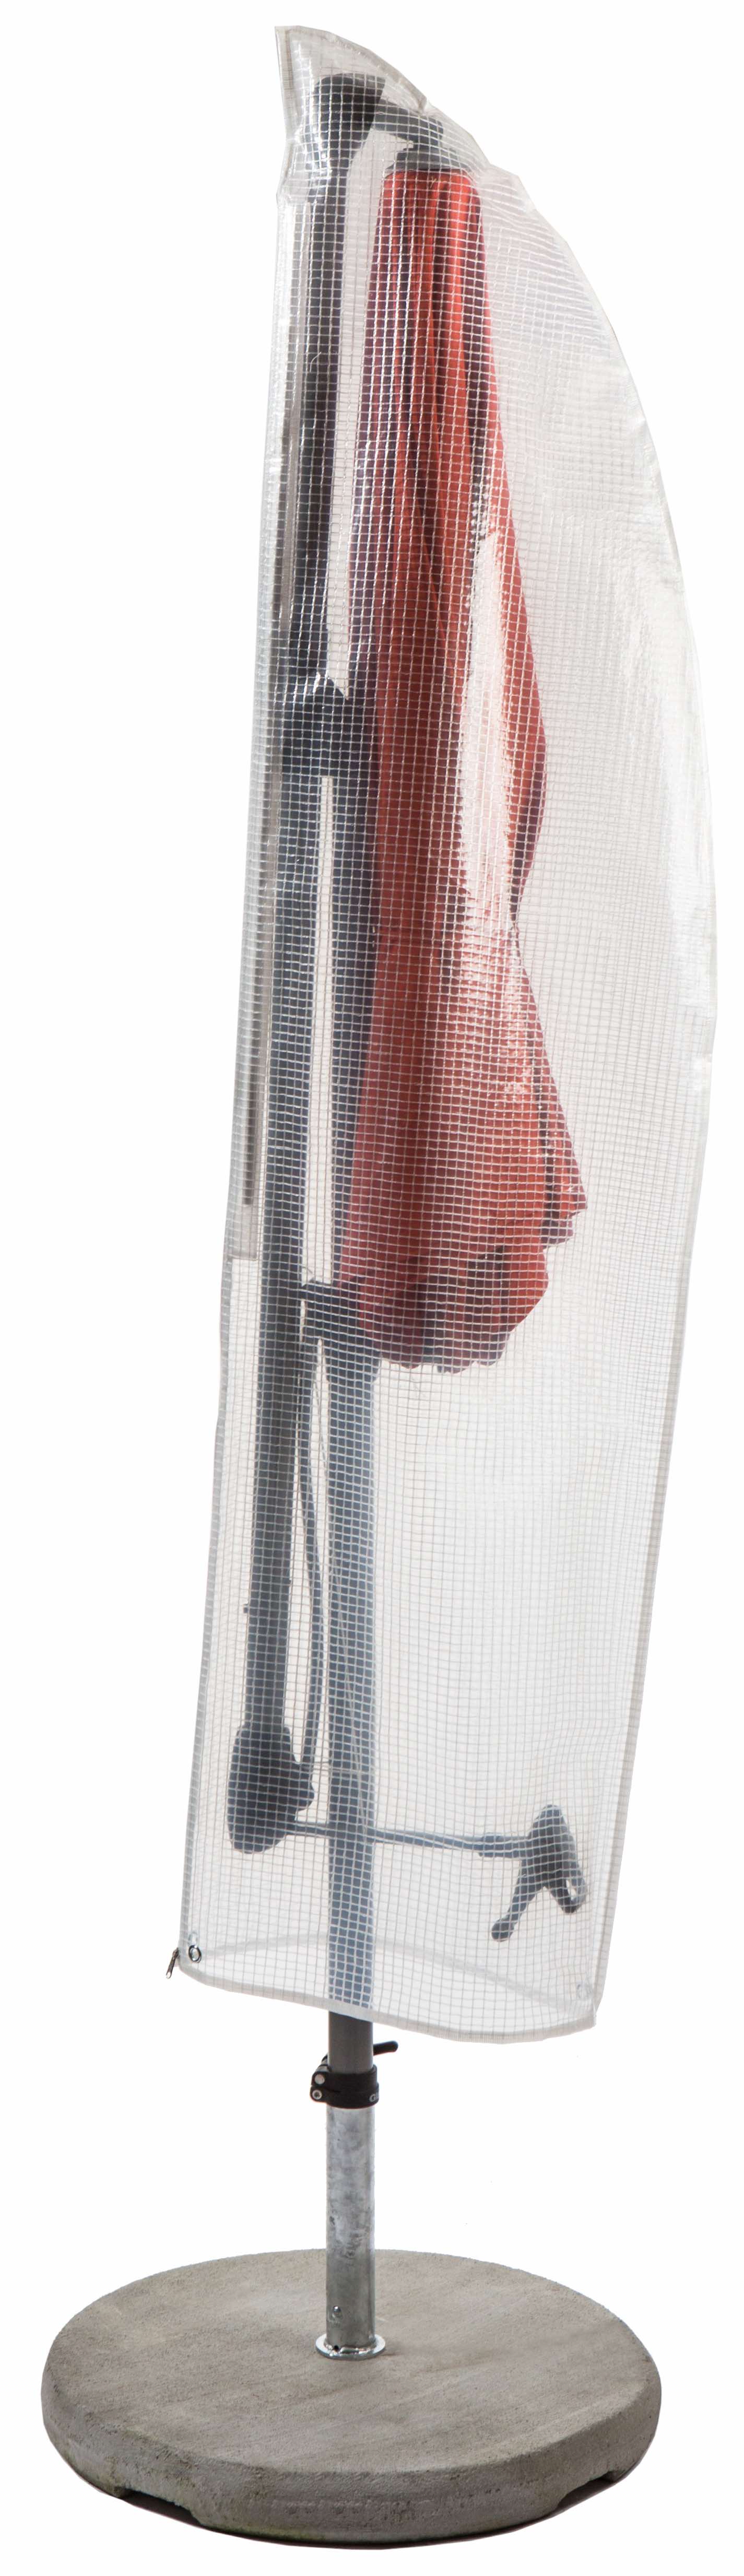 Oxford 420D Schutzplane Schutzhülle Hülle für Ampelschirm Sonnenschirm Gartenschirm Abdeckung Abdeckplane bis 4-5M 